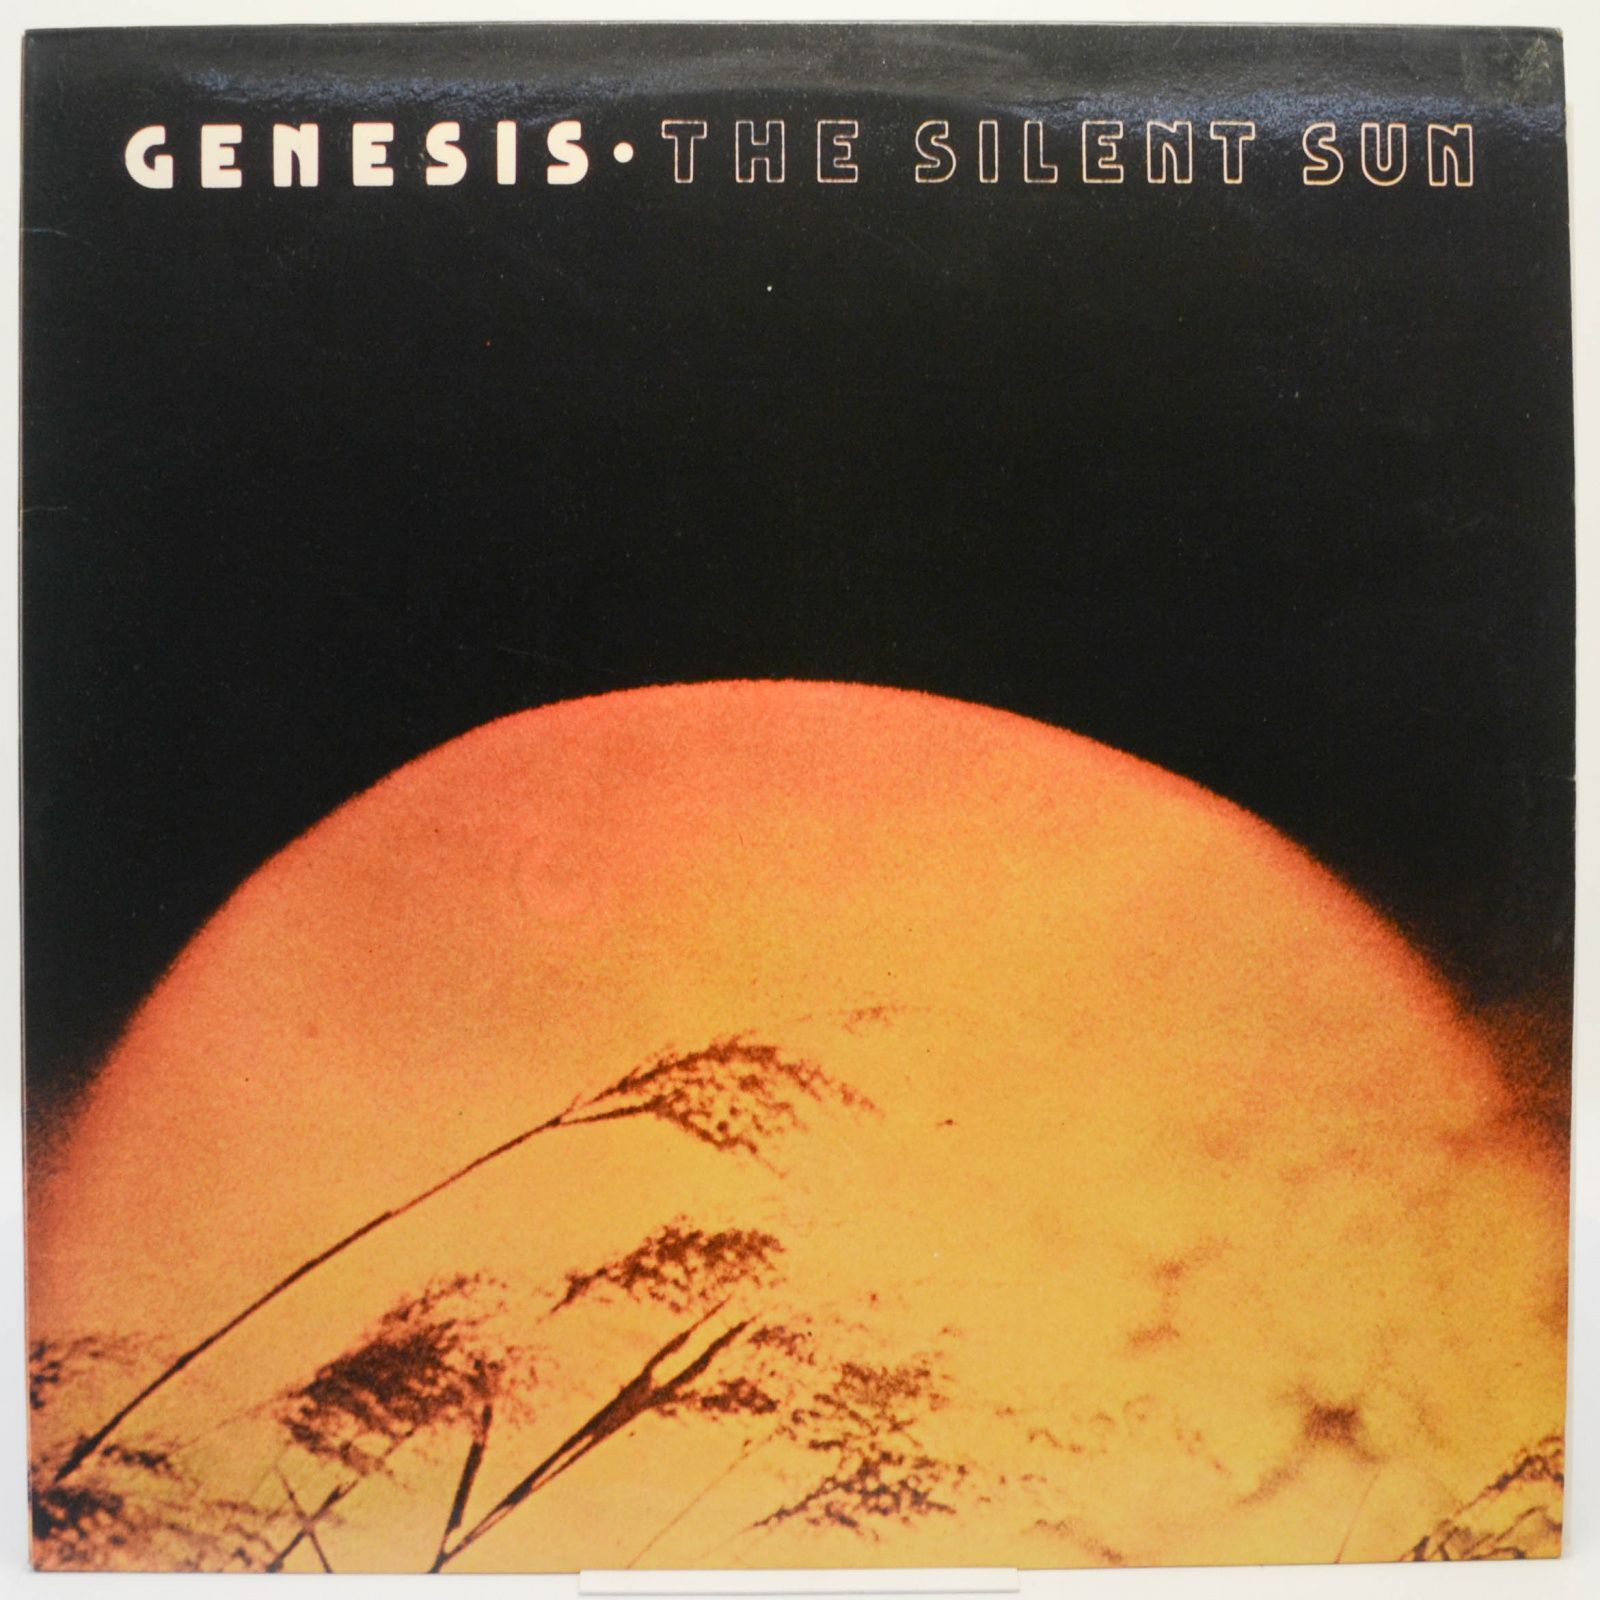 Genesis — The Silent Sun, 1969